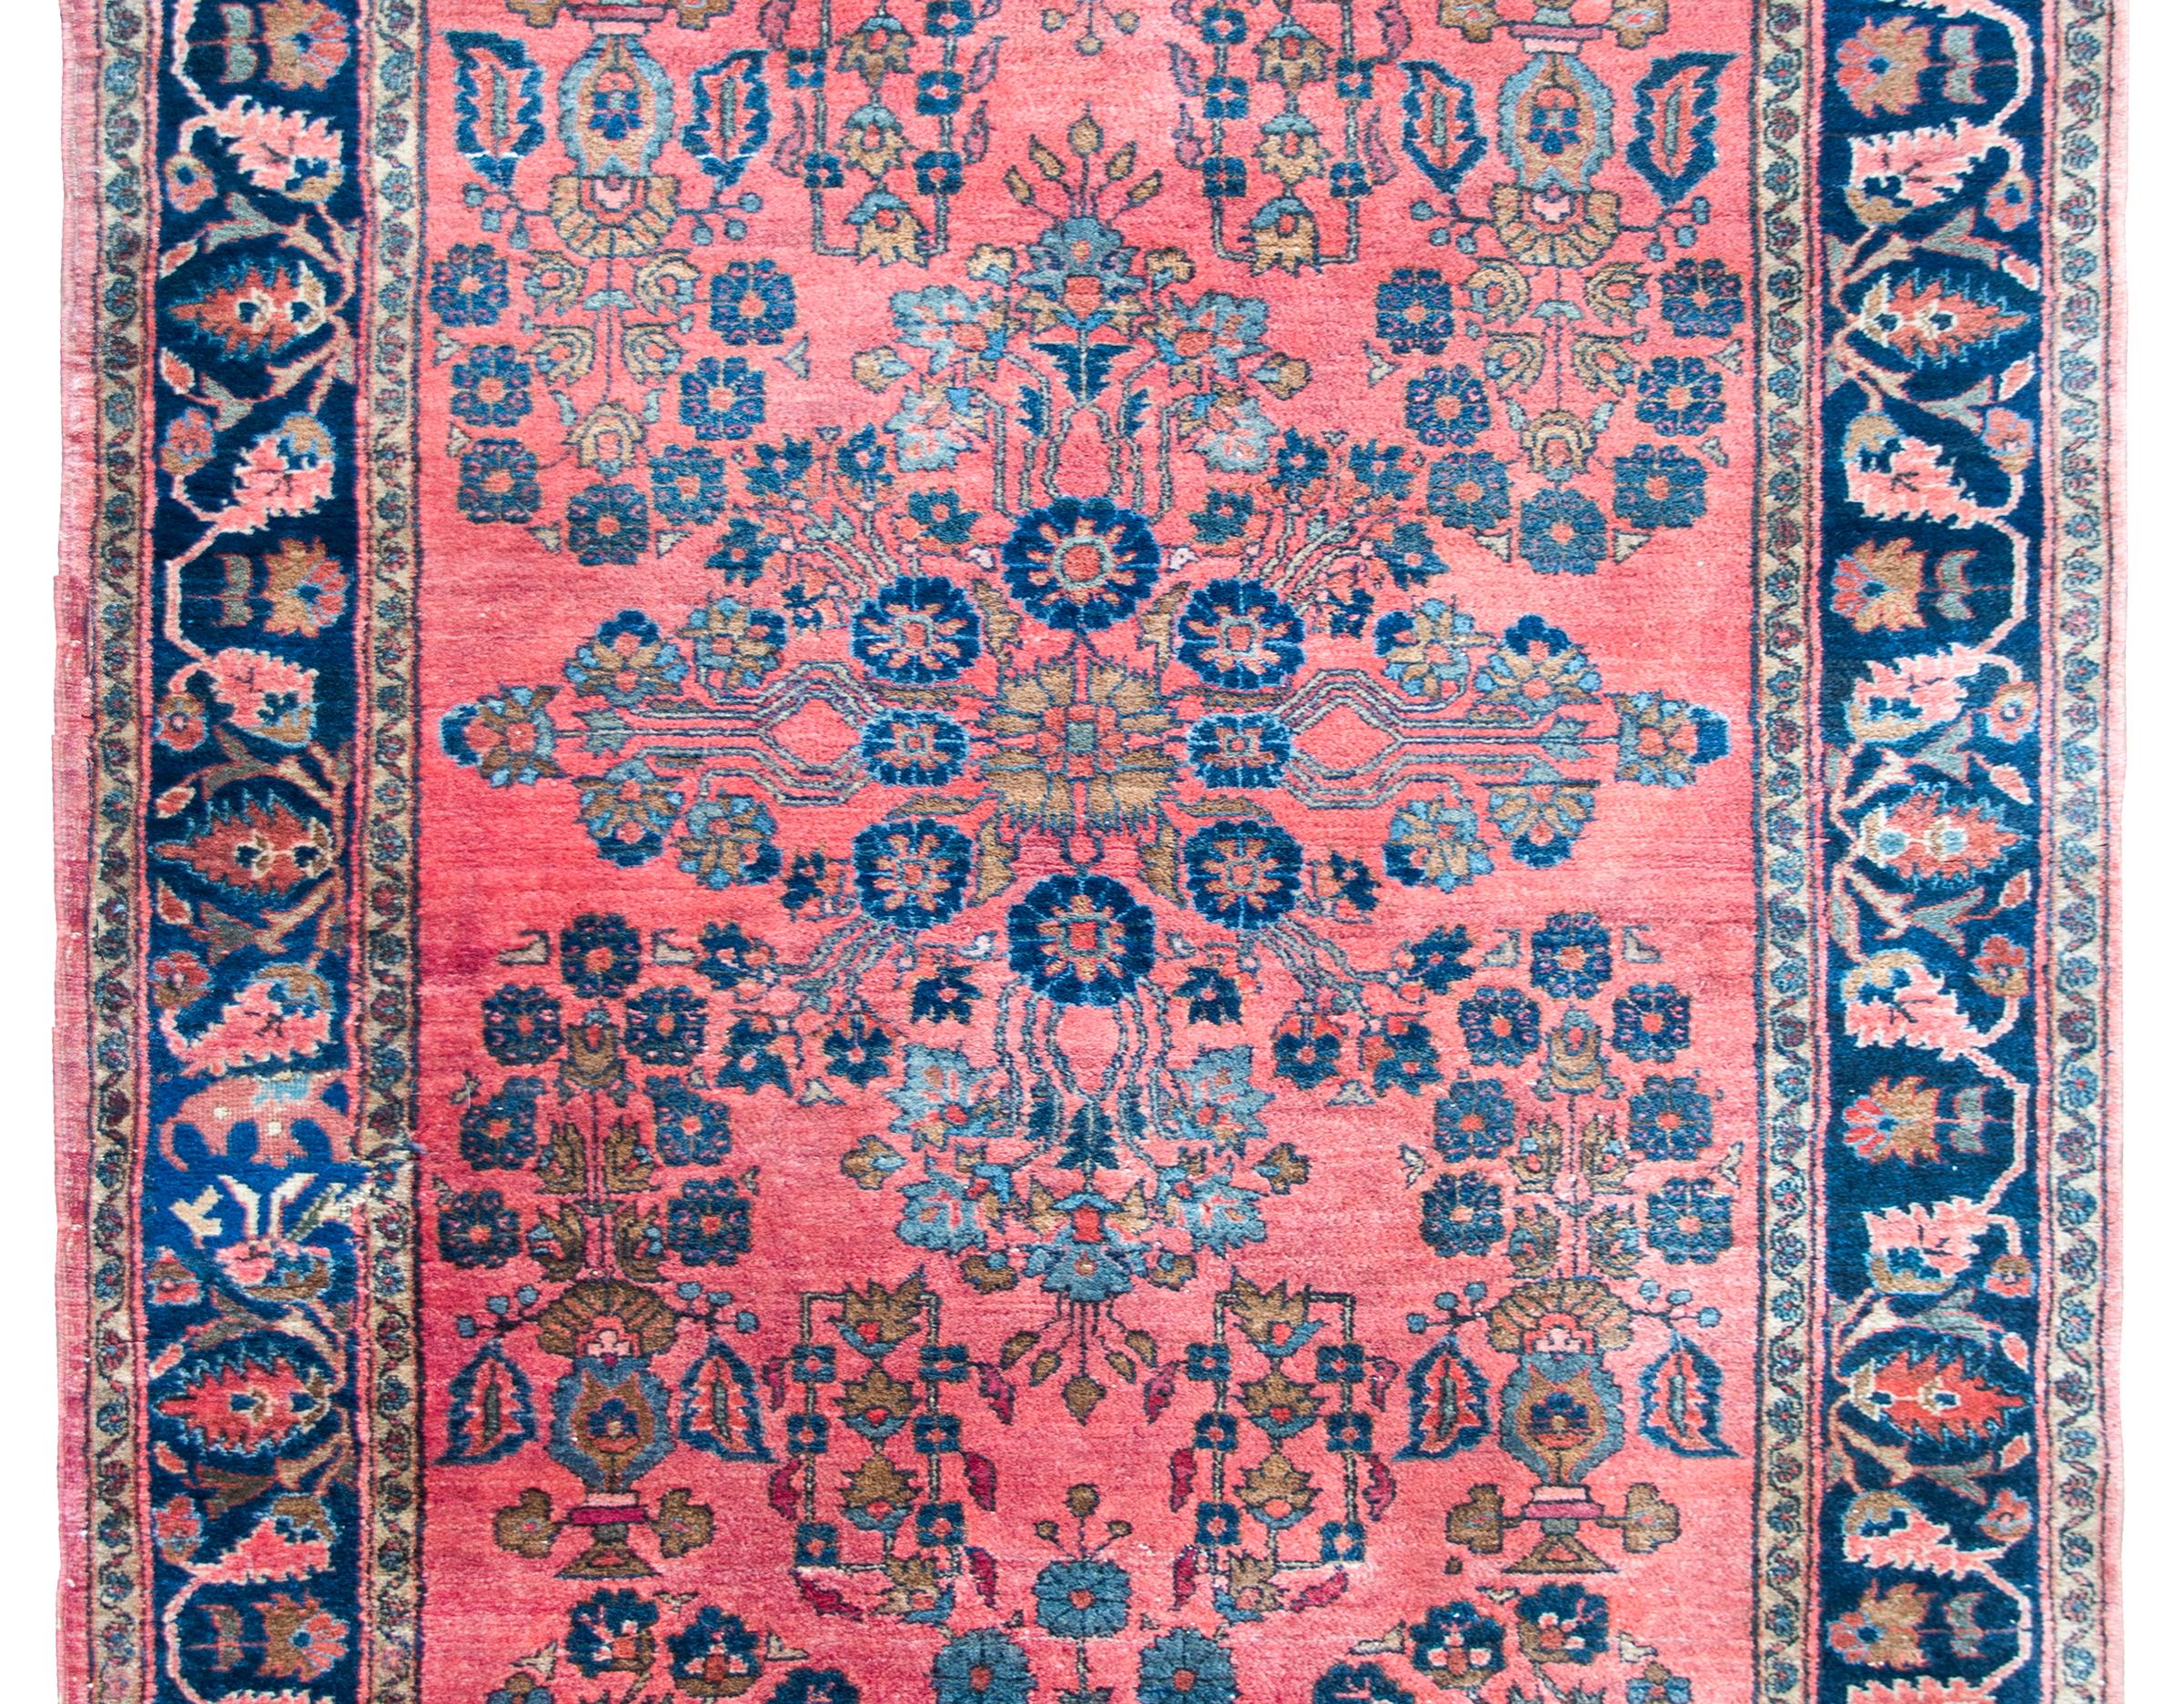 Ein wundervoller persischer Sarouk-Teppich aus dem frühen 20. Jahrhundert mit einem zentralen Blumenmedaillon inmitten eines Feldes mit einem gespiegelten Blumenmuster, das in Rosa, Creme sowie hellem und dunklem Indigo gewebt ist und vor einem